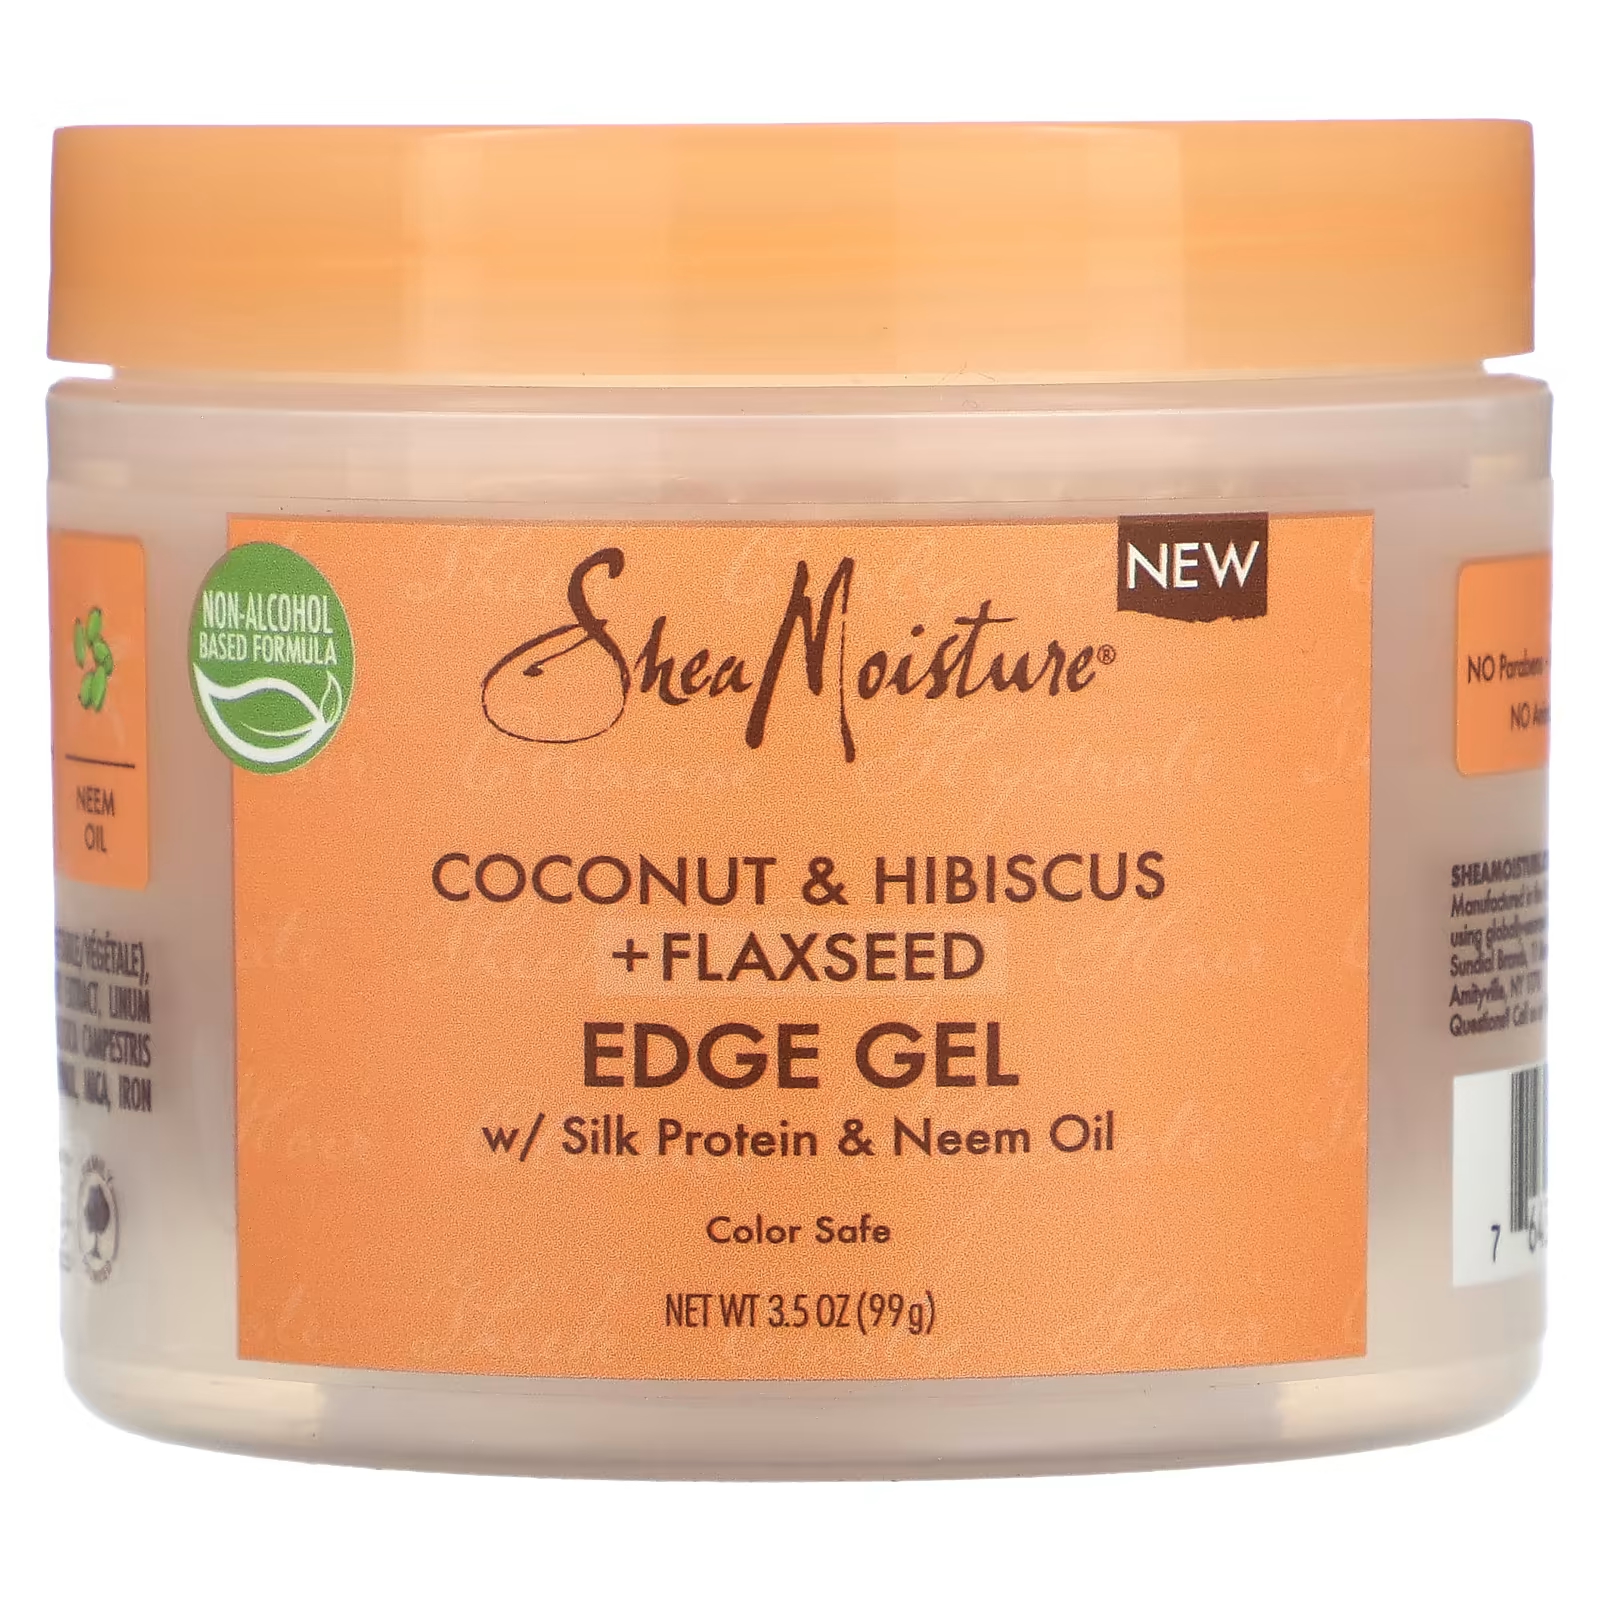 Гель для волос SheaMoisture Edge Gel кокос гибискус и льняное семя, 99г смузи sheamoisture для локонов с шелковым протеином и маслом нима кокосом и гибискусом 91 г